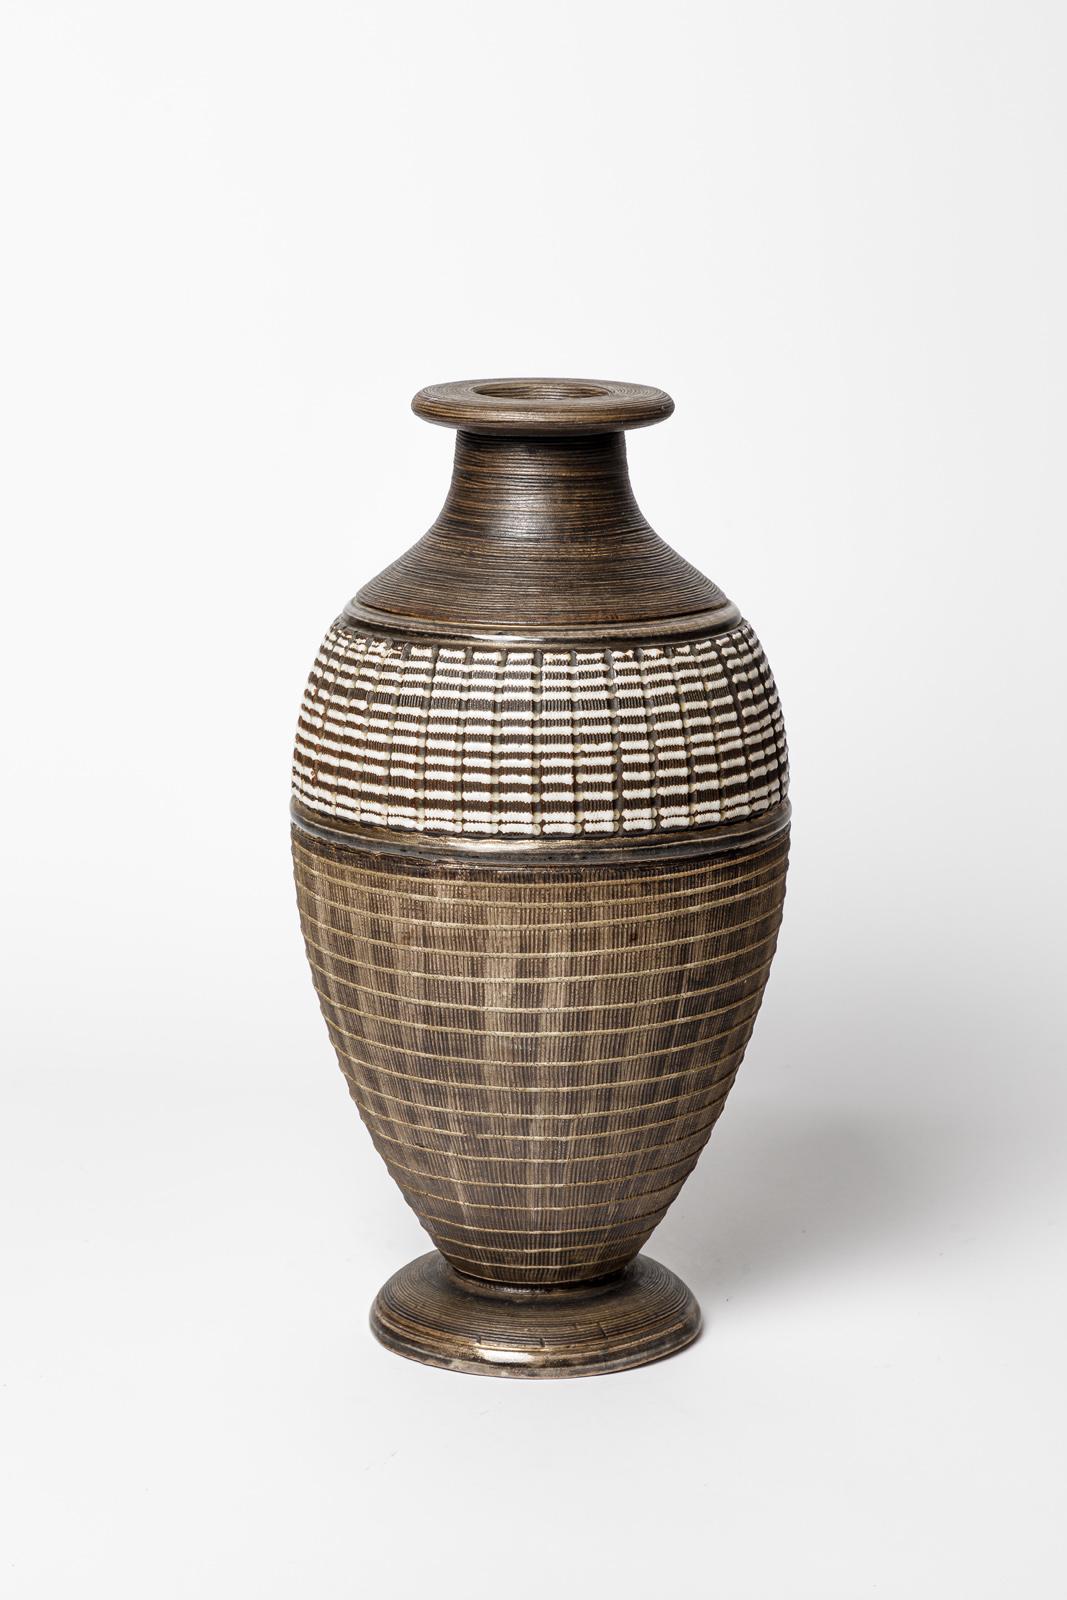 Lucien Brisdoux

Circa 1930

Large art deco 20th century ceramic vase

Original perfect condition

Signed under the base

Height 34 cm
Large 16 cm